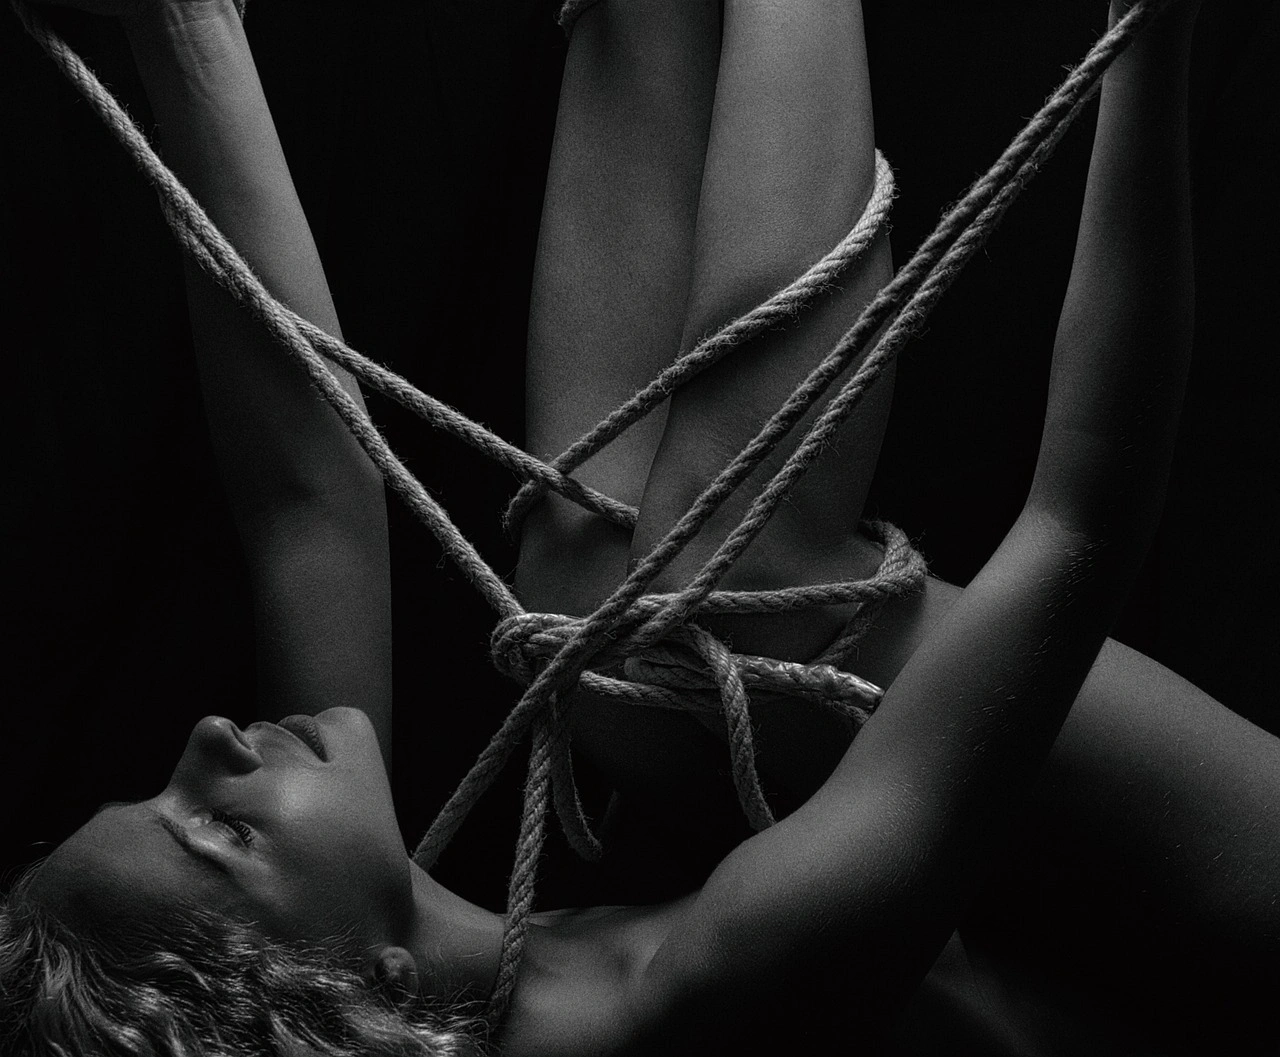 Nackte Frau, die mit Seilen zusammengebunden ist.